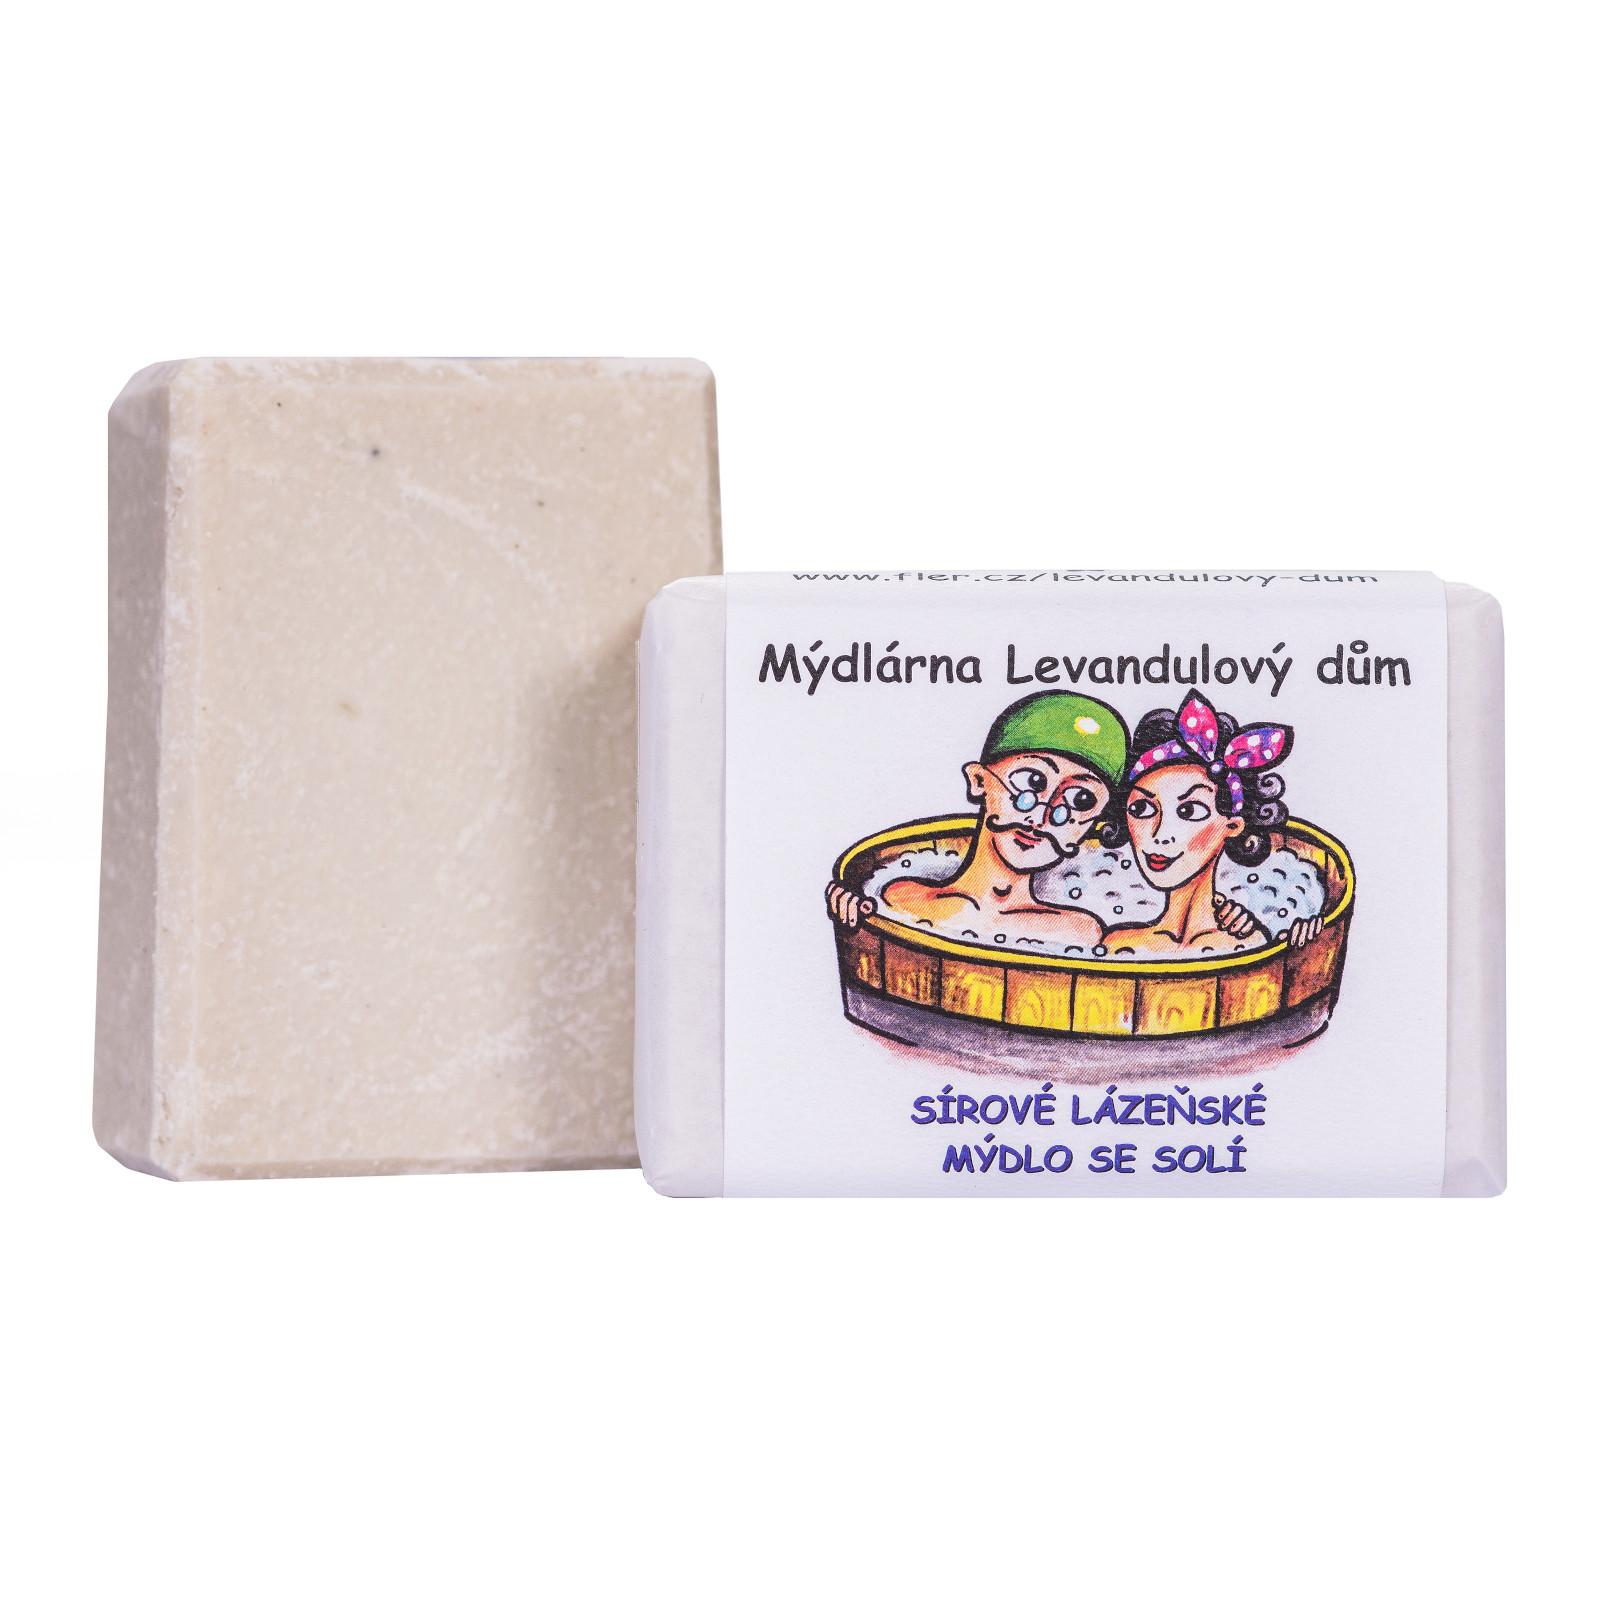 Mýdlárna Levandulový dům Sírové lázeňské mýdlo se solí 120 g